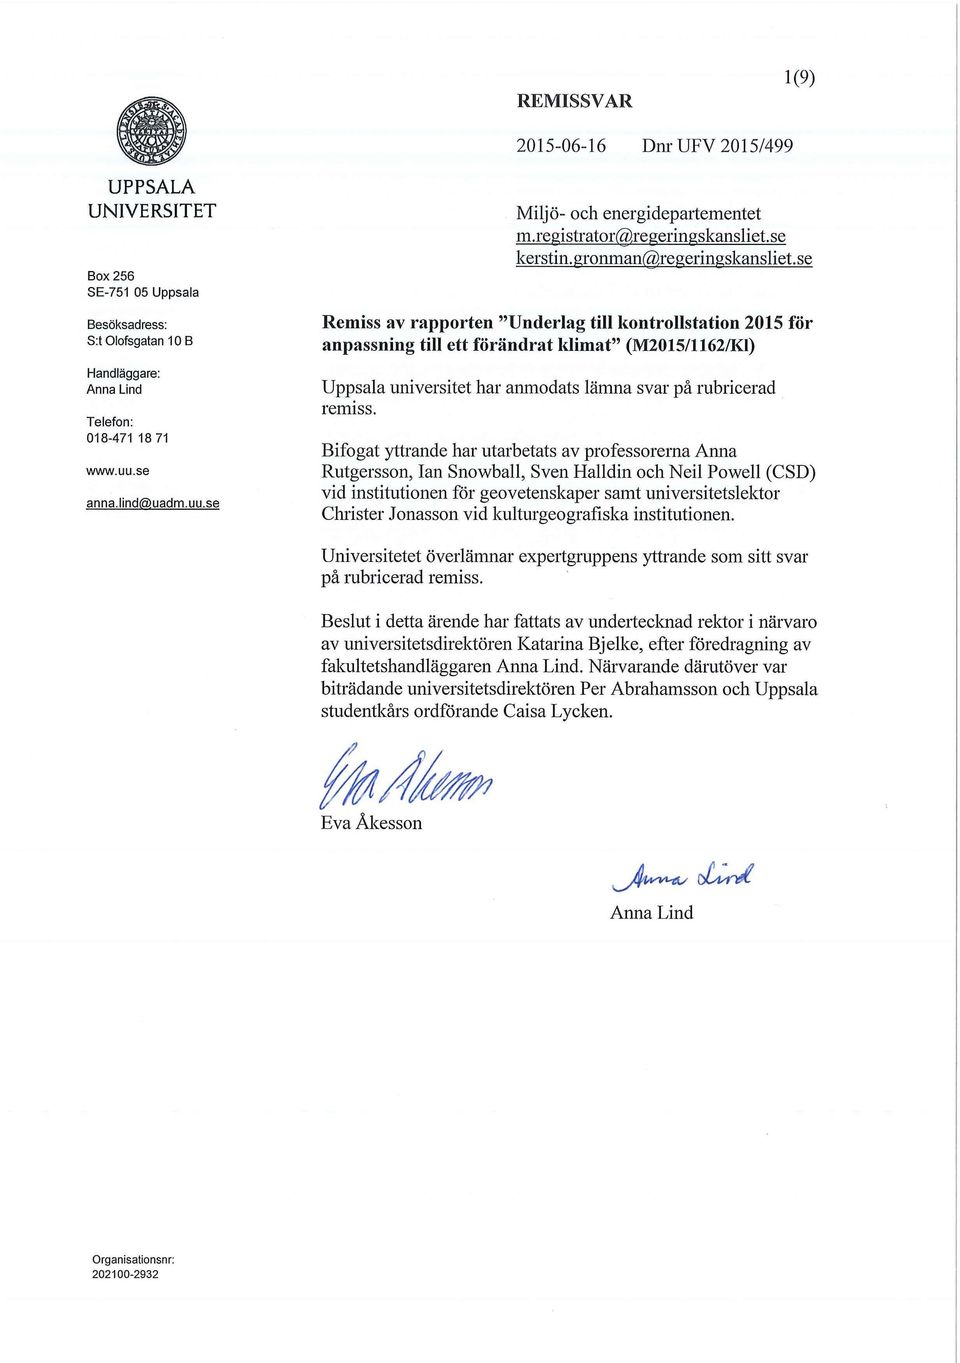 se Remiss av rapporten "Underlag till kontrollstation 2015 för anpassning till ett förändrat ldimat" (M2015/1162/Kl) Uppsala universitet har anmodats lämna svar på rubricerad remiss.